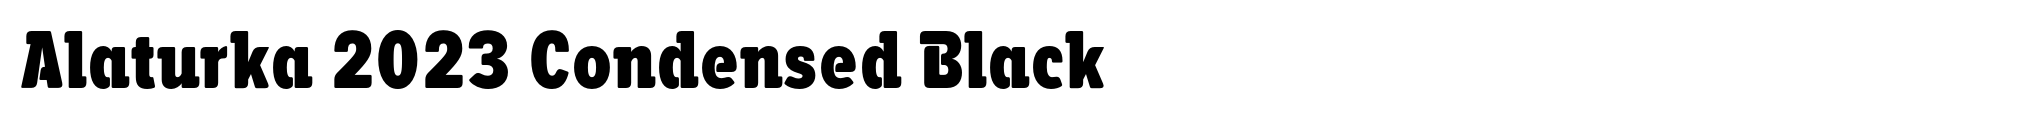 Alaturka 2023 Condensed Black image